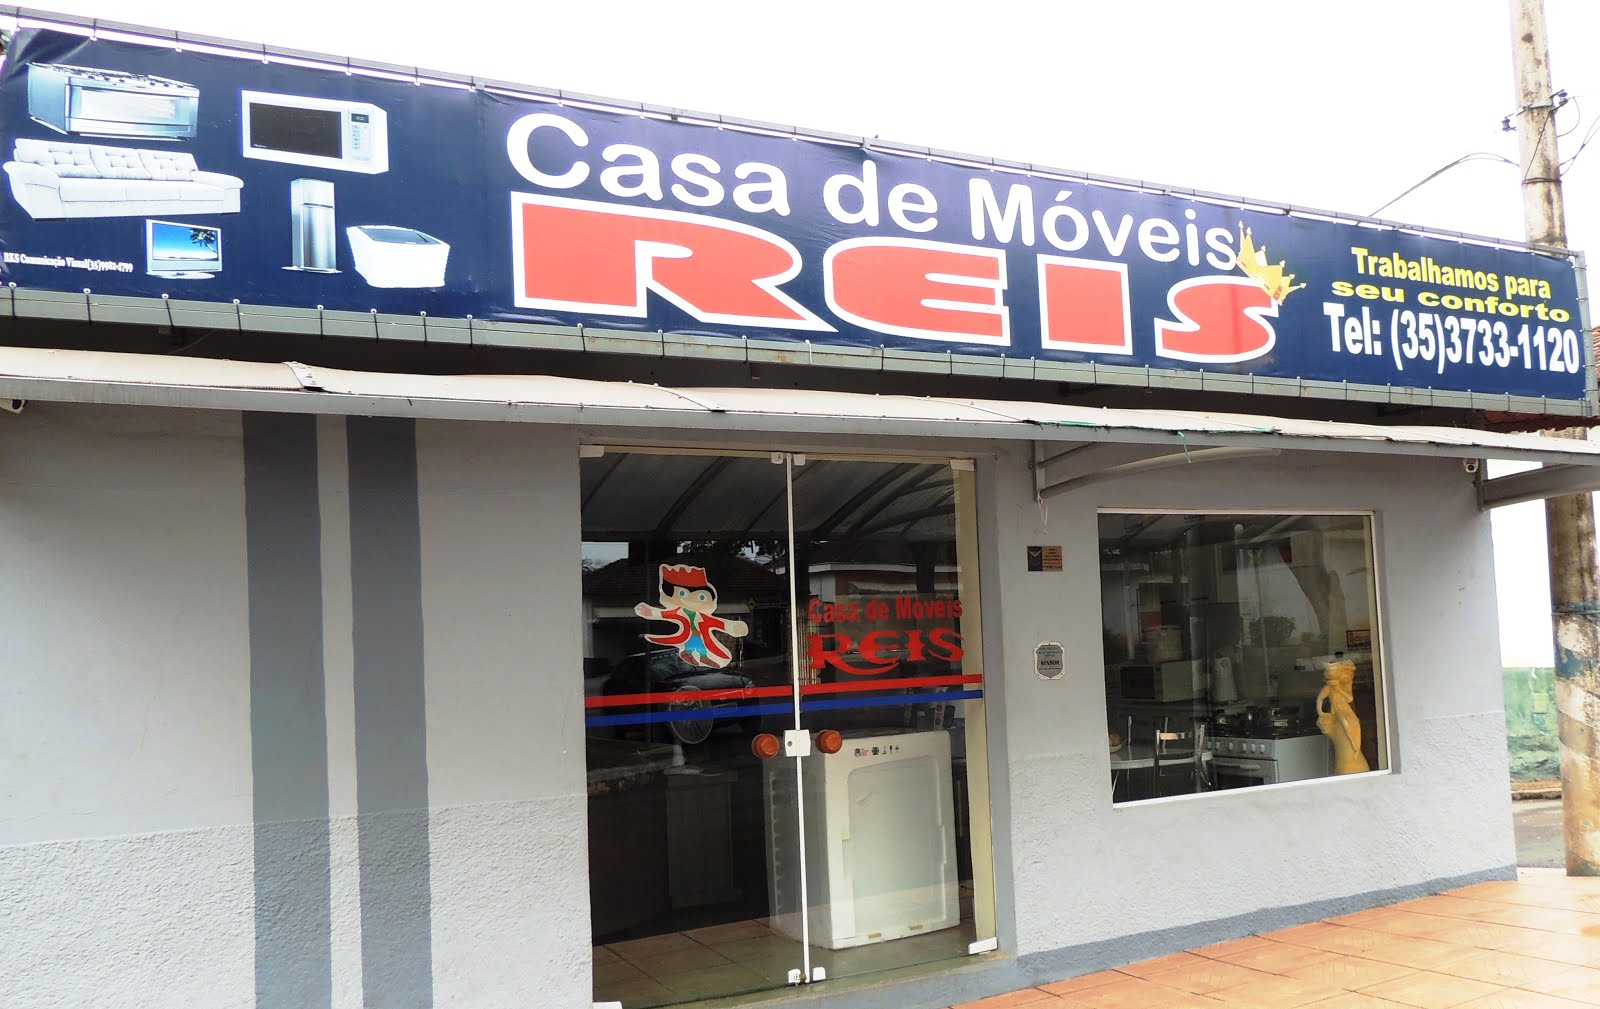 CASA DE MOVEIS REIS